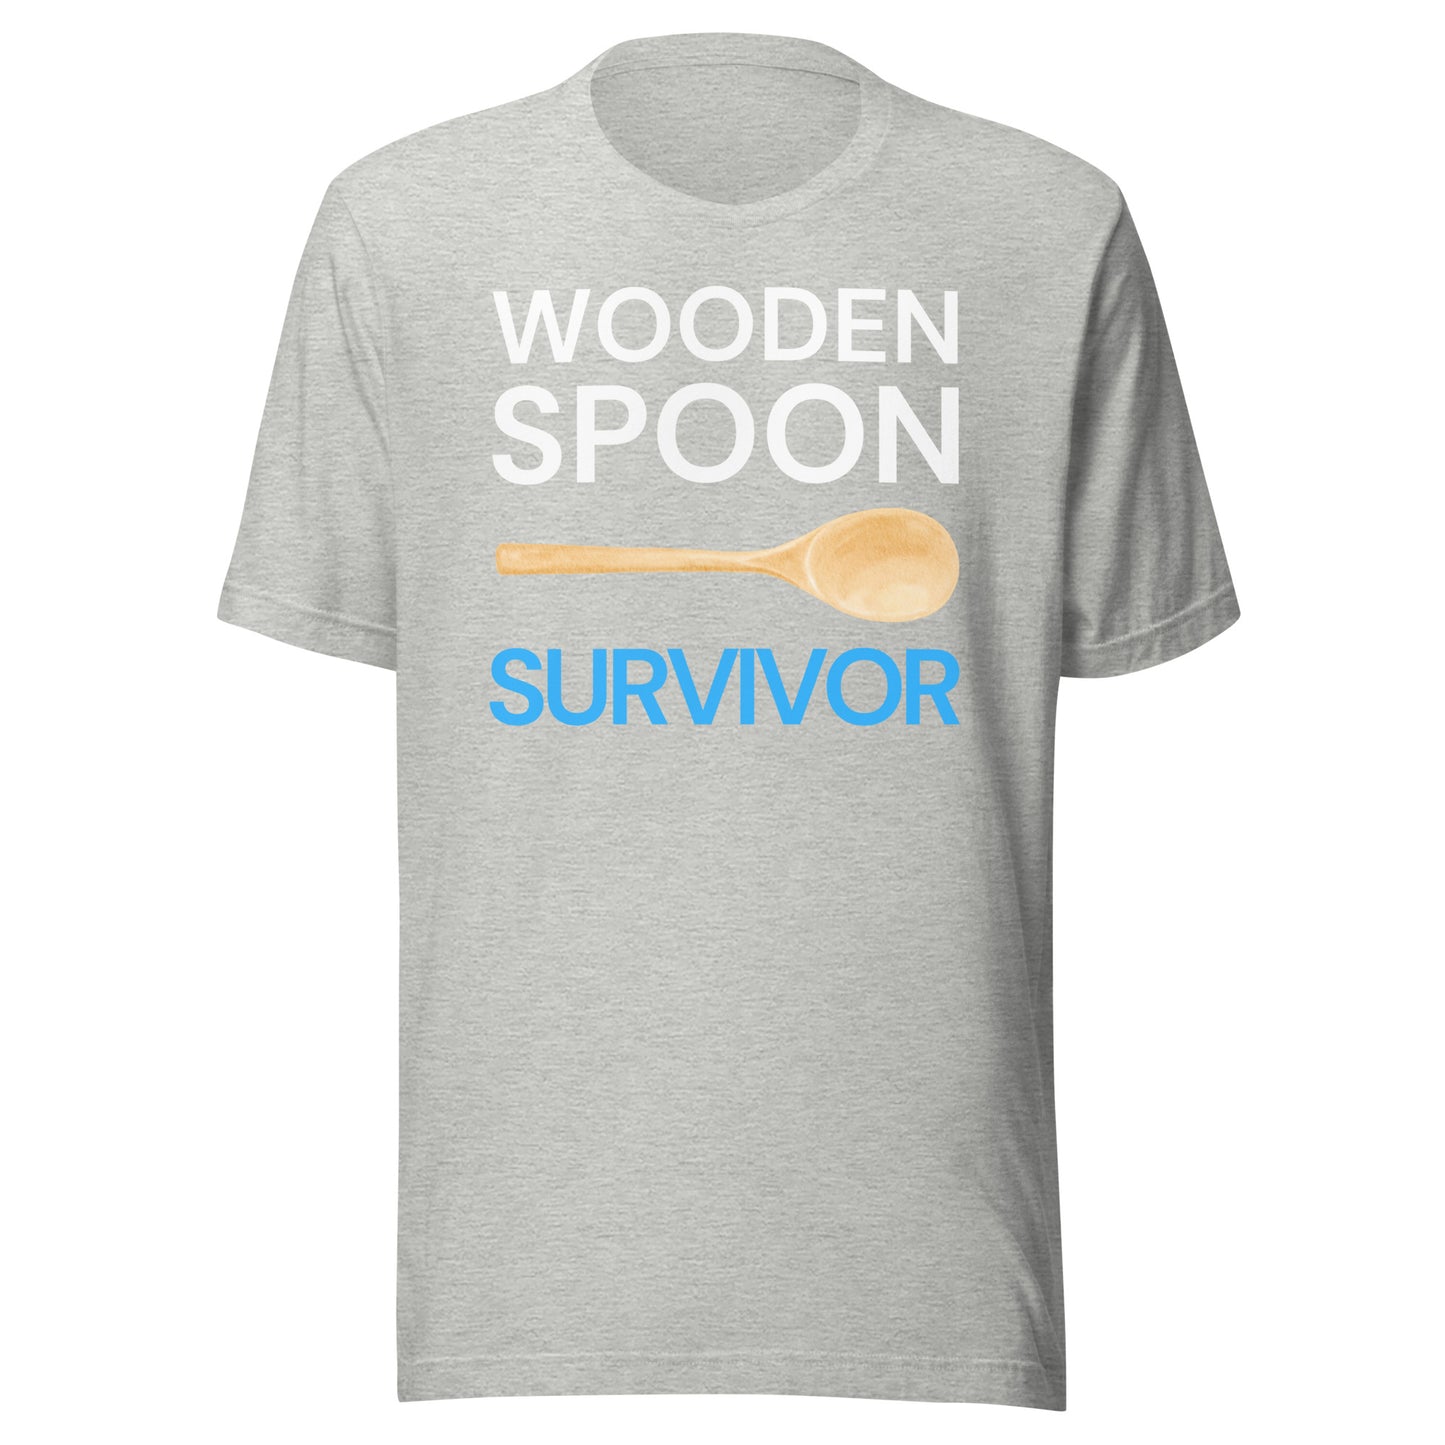 WOODEN SPOON SURVIVOR Unisex T-Shirt